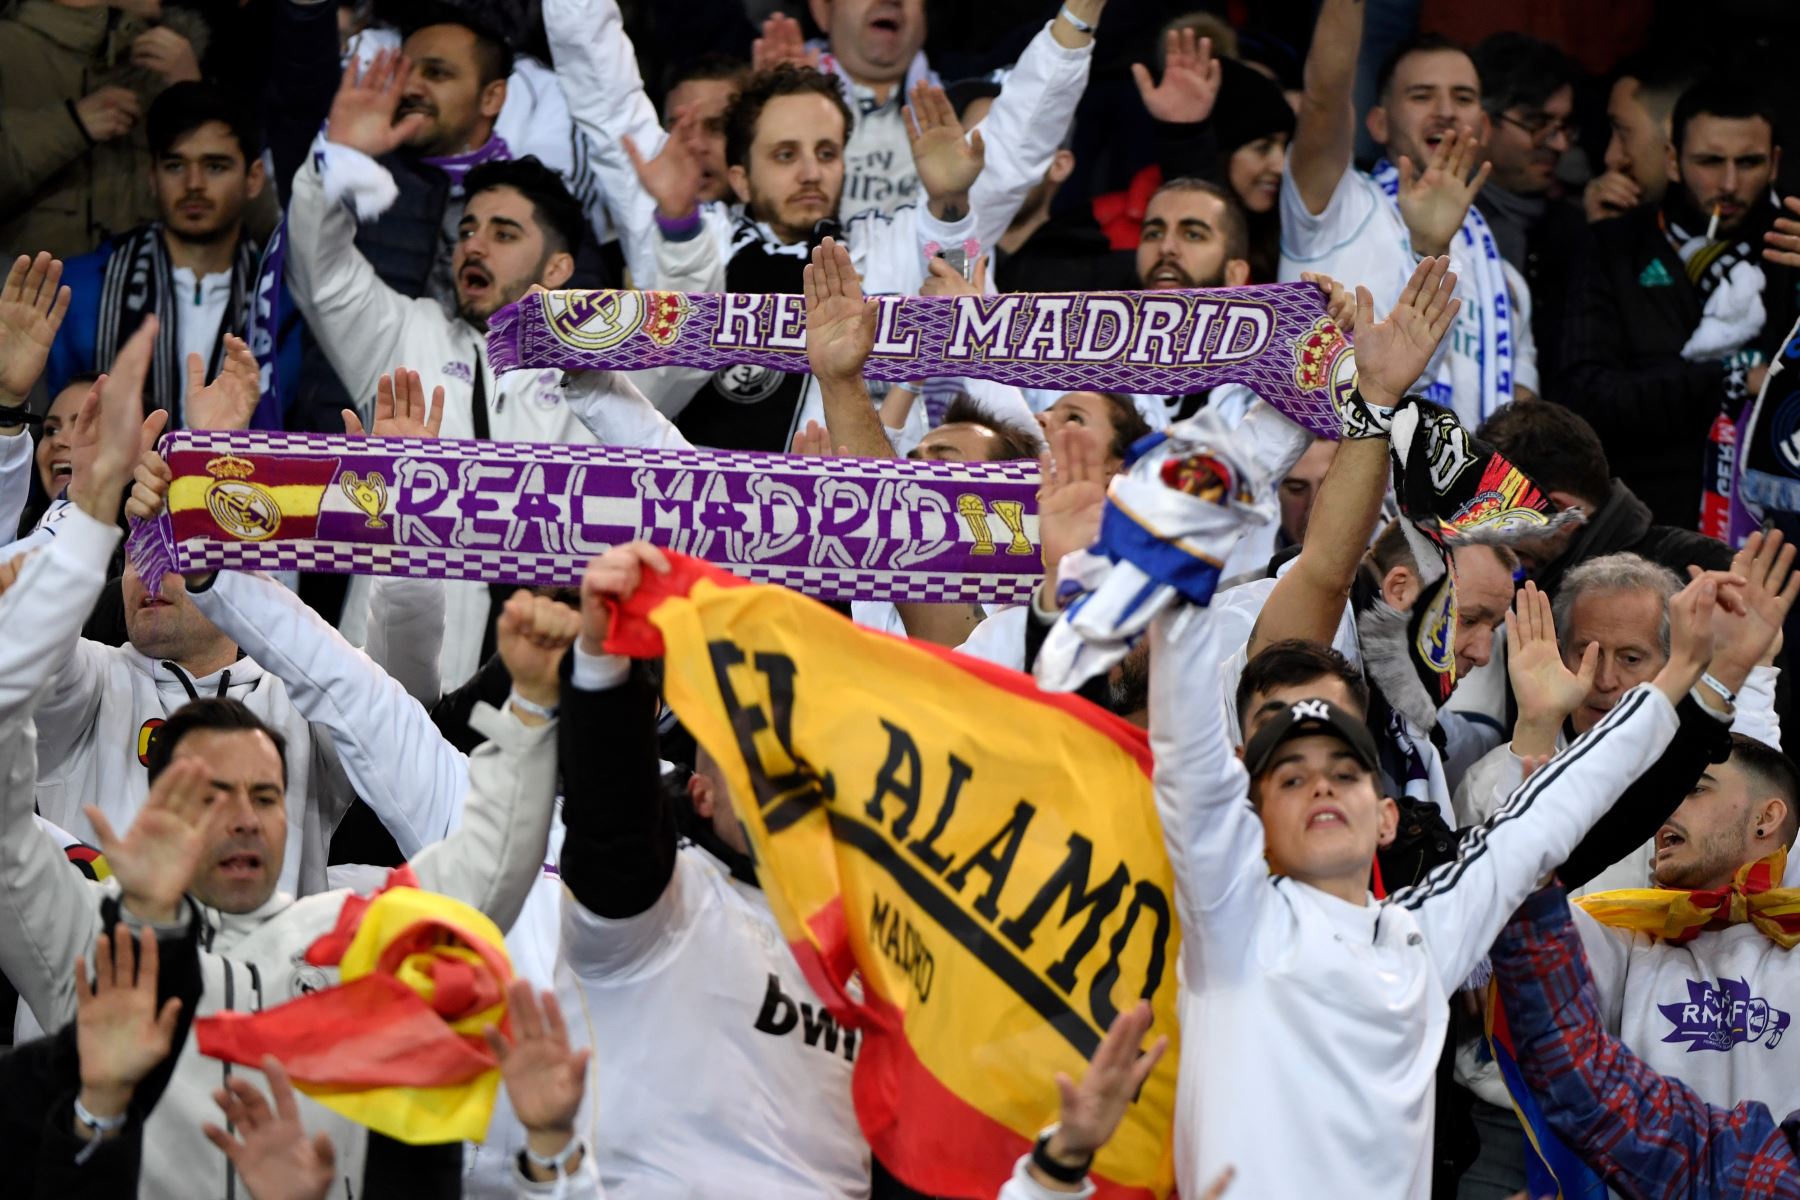 Seguidores del Real Madrid antes del partido de fútbol de la ronda de octavos de final de la UEFA. Foto: AFP